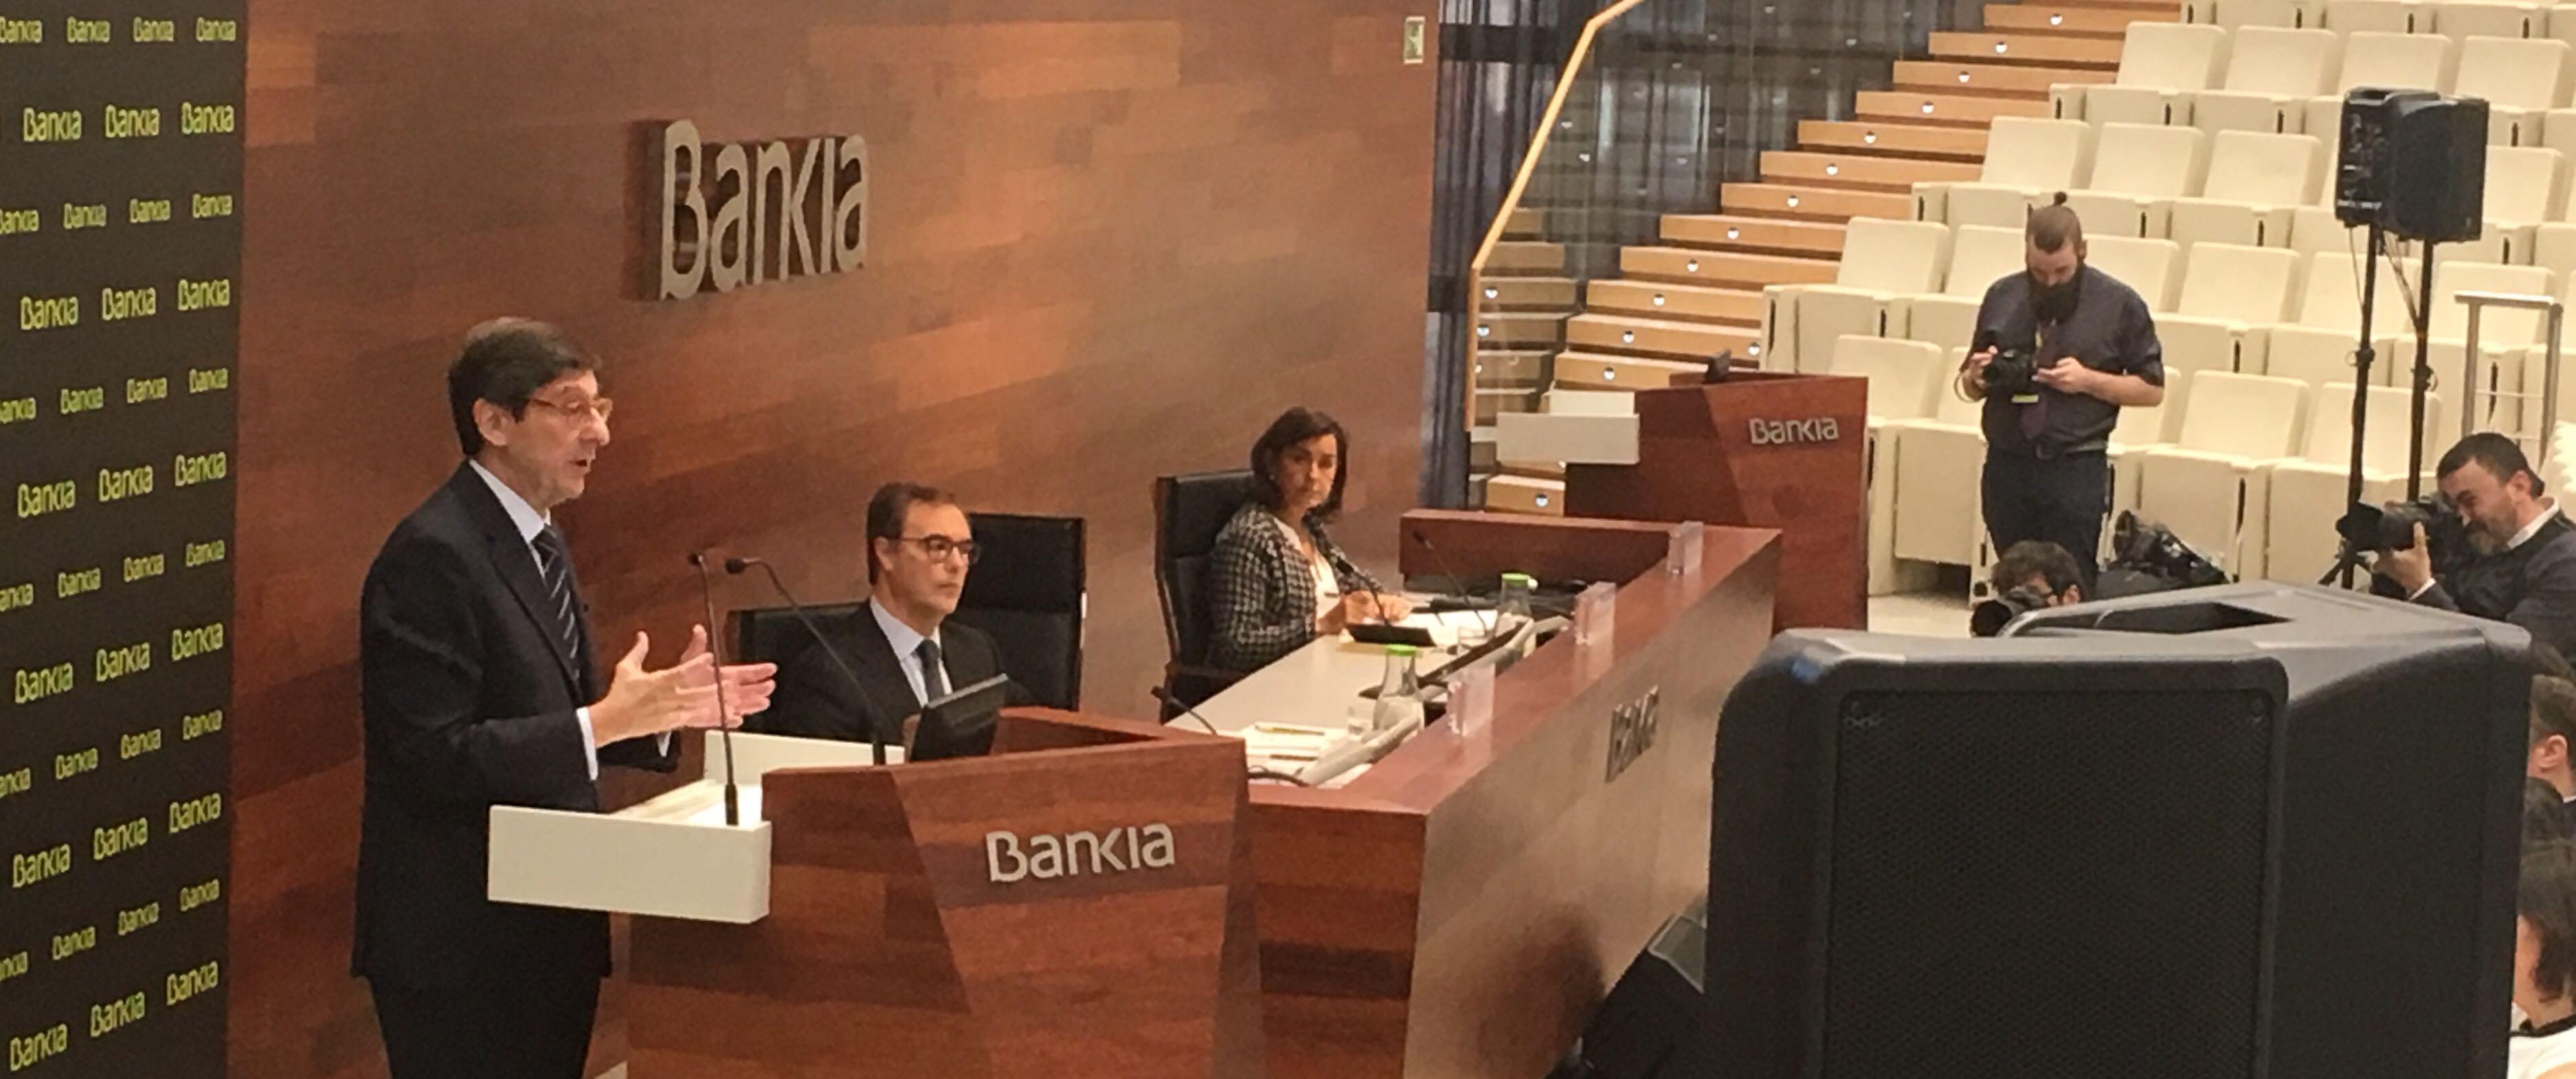 José Ignacio Goirigolzarri presentando los resultados de Bankia - El Plural